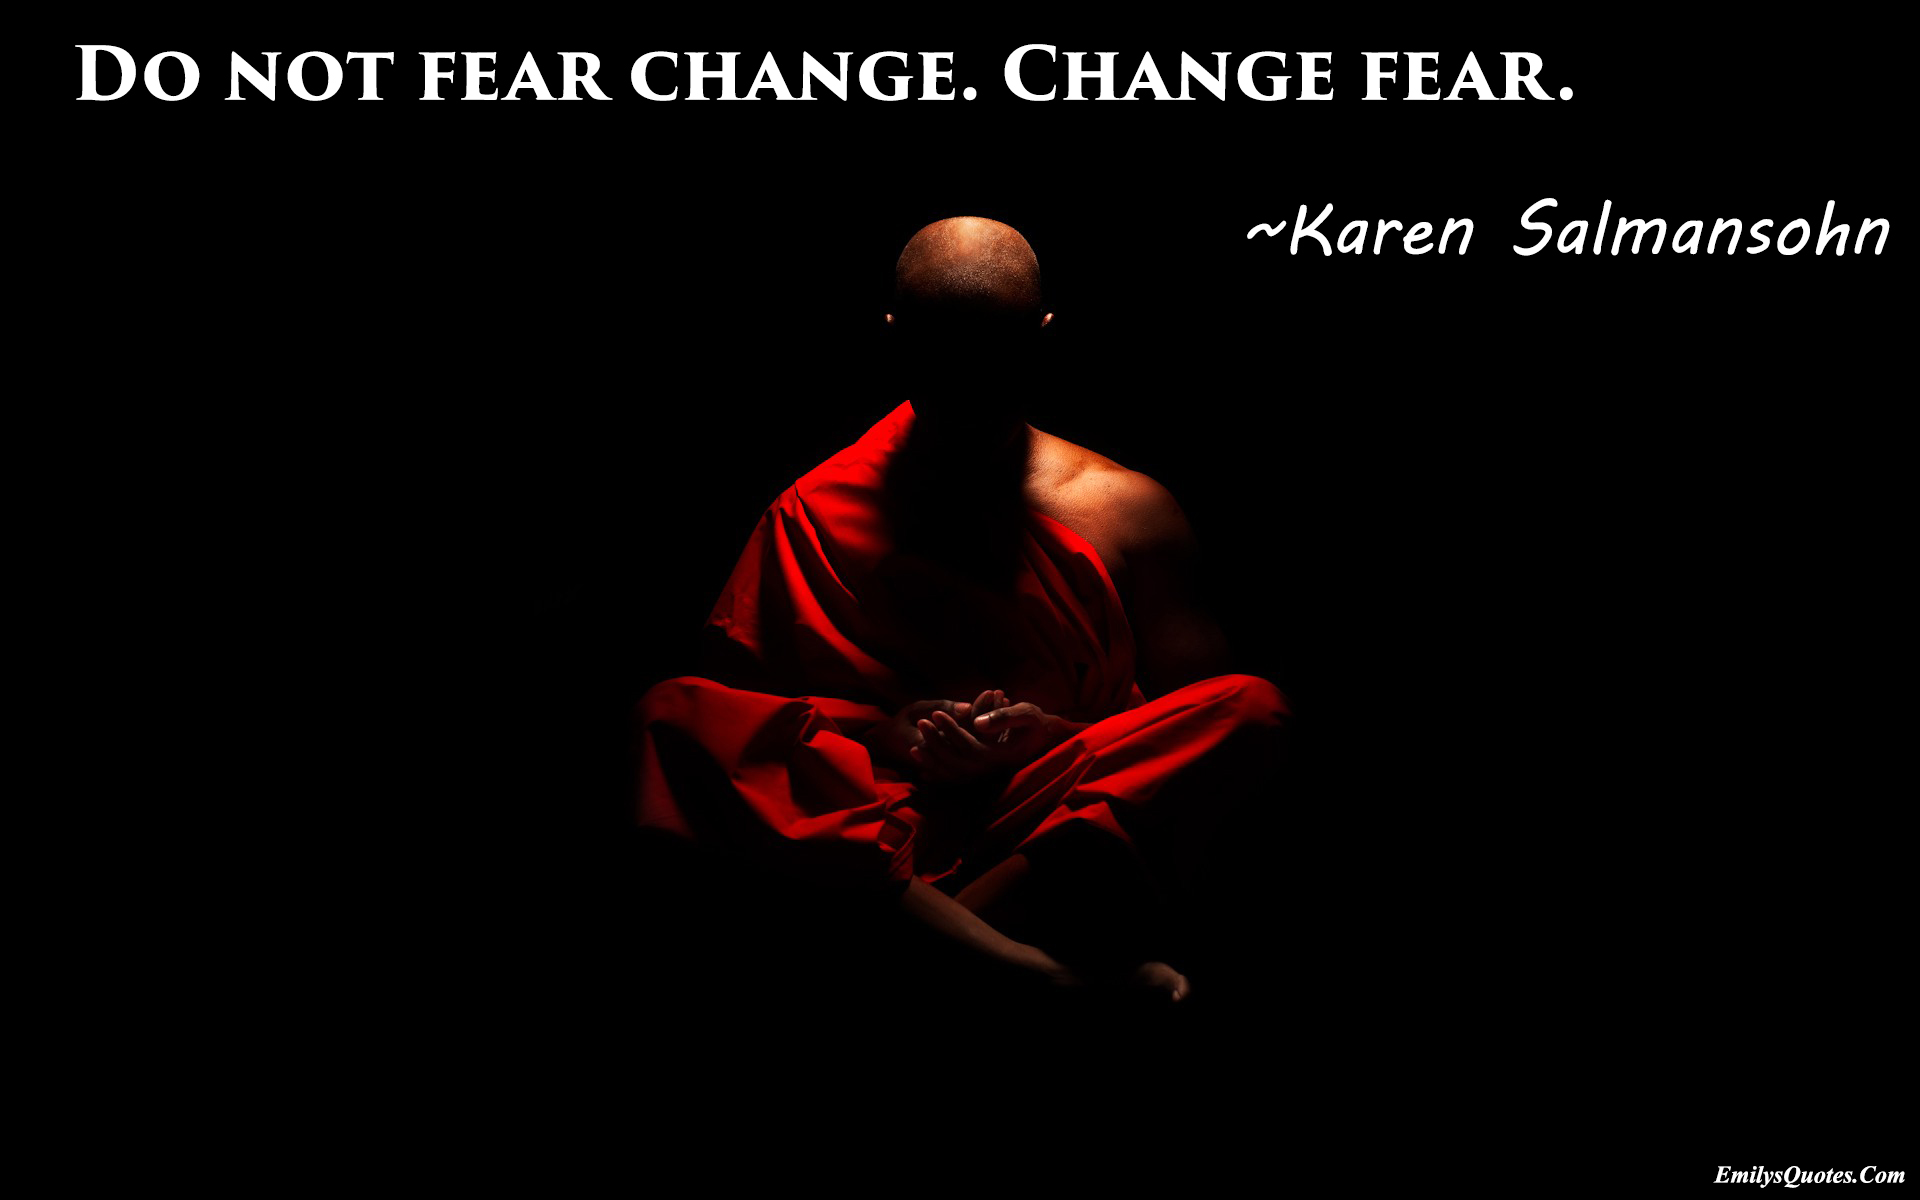 Do not fear change. Change fear